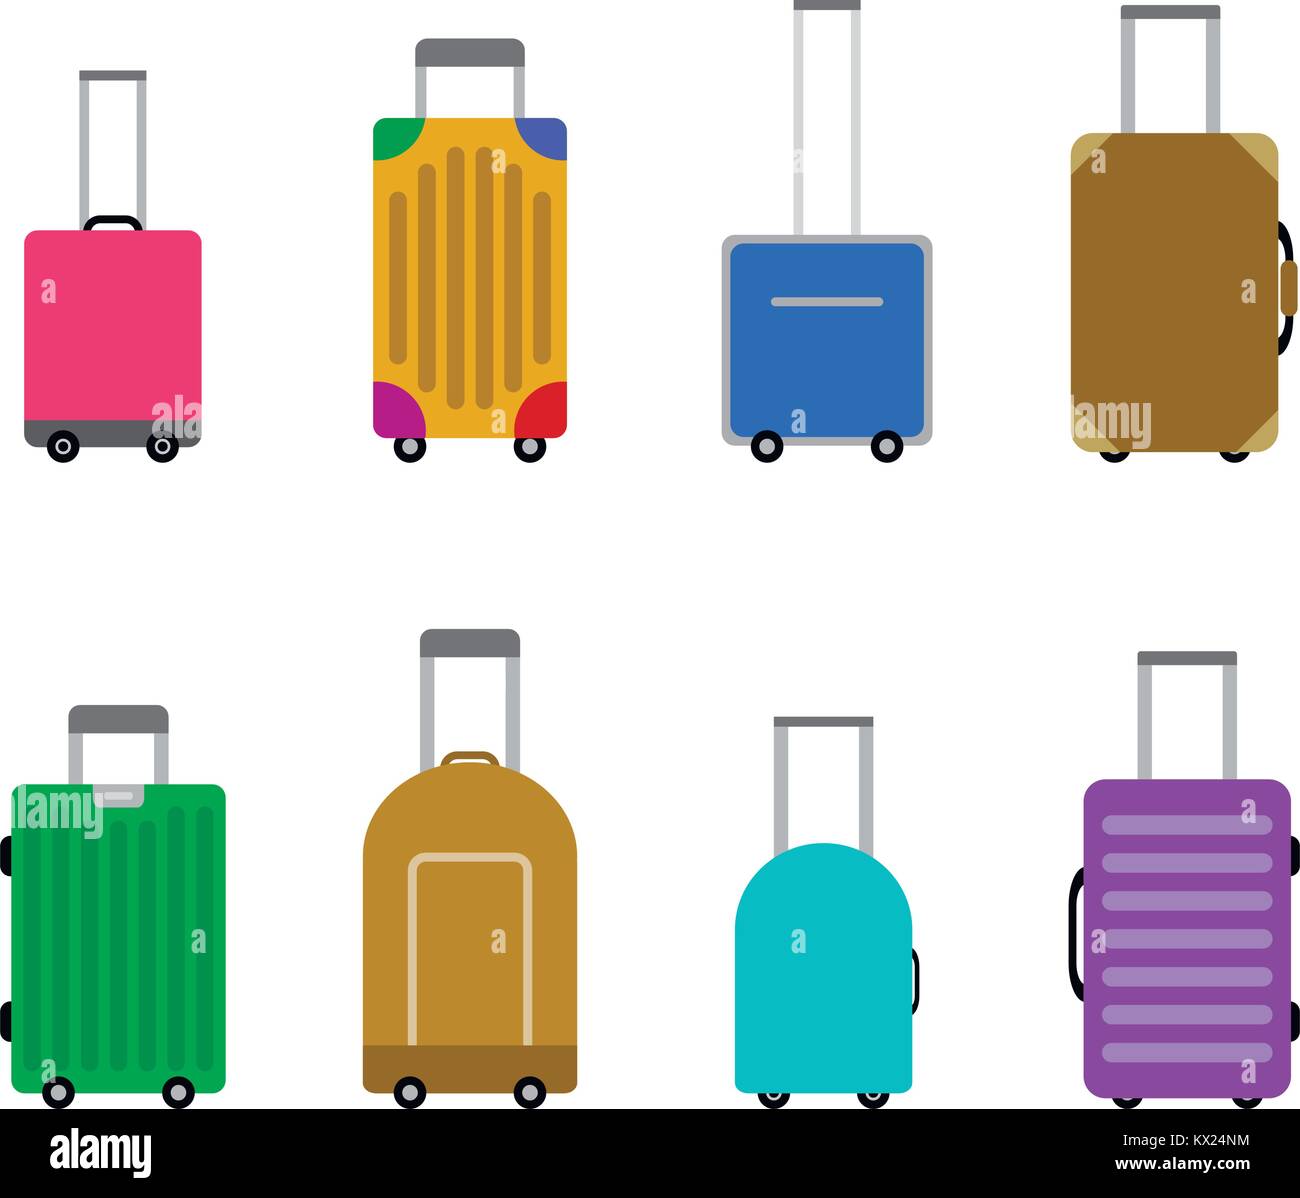 Koffer und Gepäck für die Reise und die Reise von eingestellt. Koffer für Tourismus, Tasche Reise oder Reise Urlaub, Vektor, Abbildung Stock Vektor